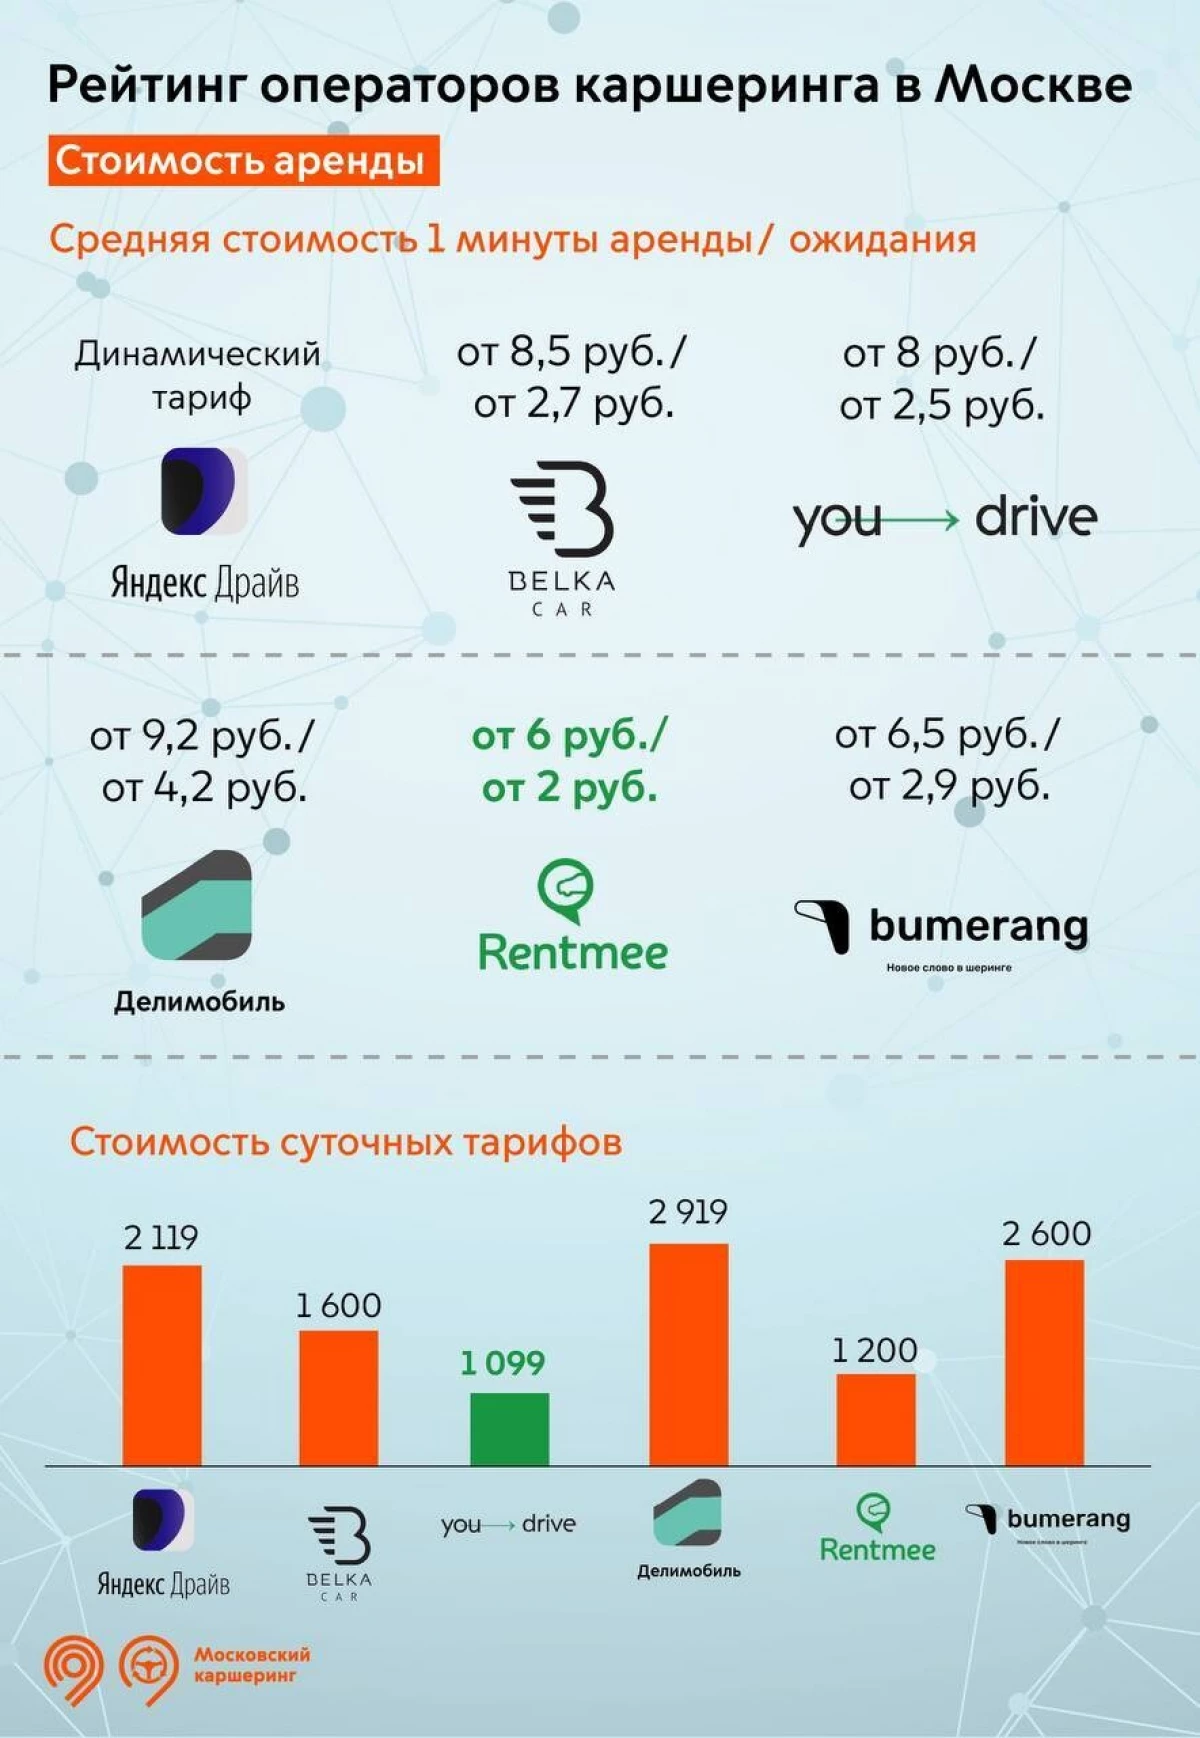 Moskow ditahan membandingkan layanan mogok - dengan jumlah perjalanan dan pengguna memimpin "Yandex.deriv" ​​dan "Delimobil"